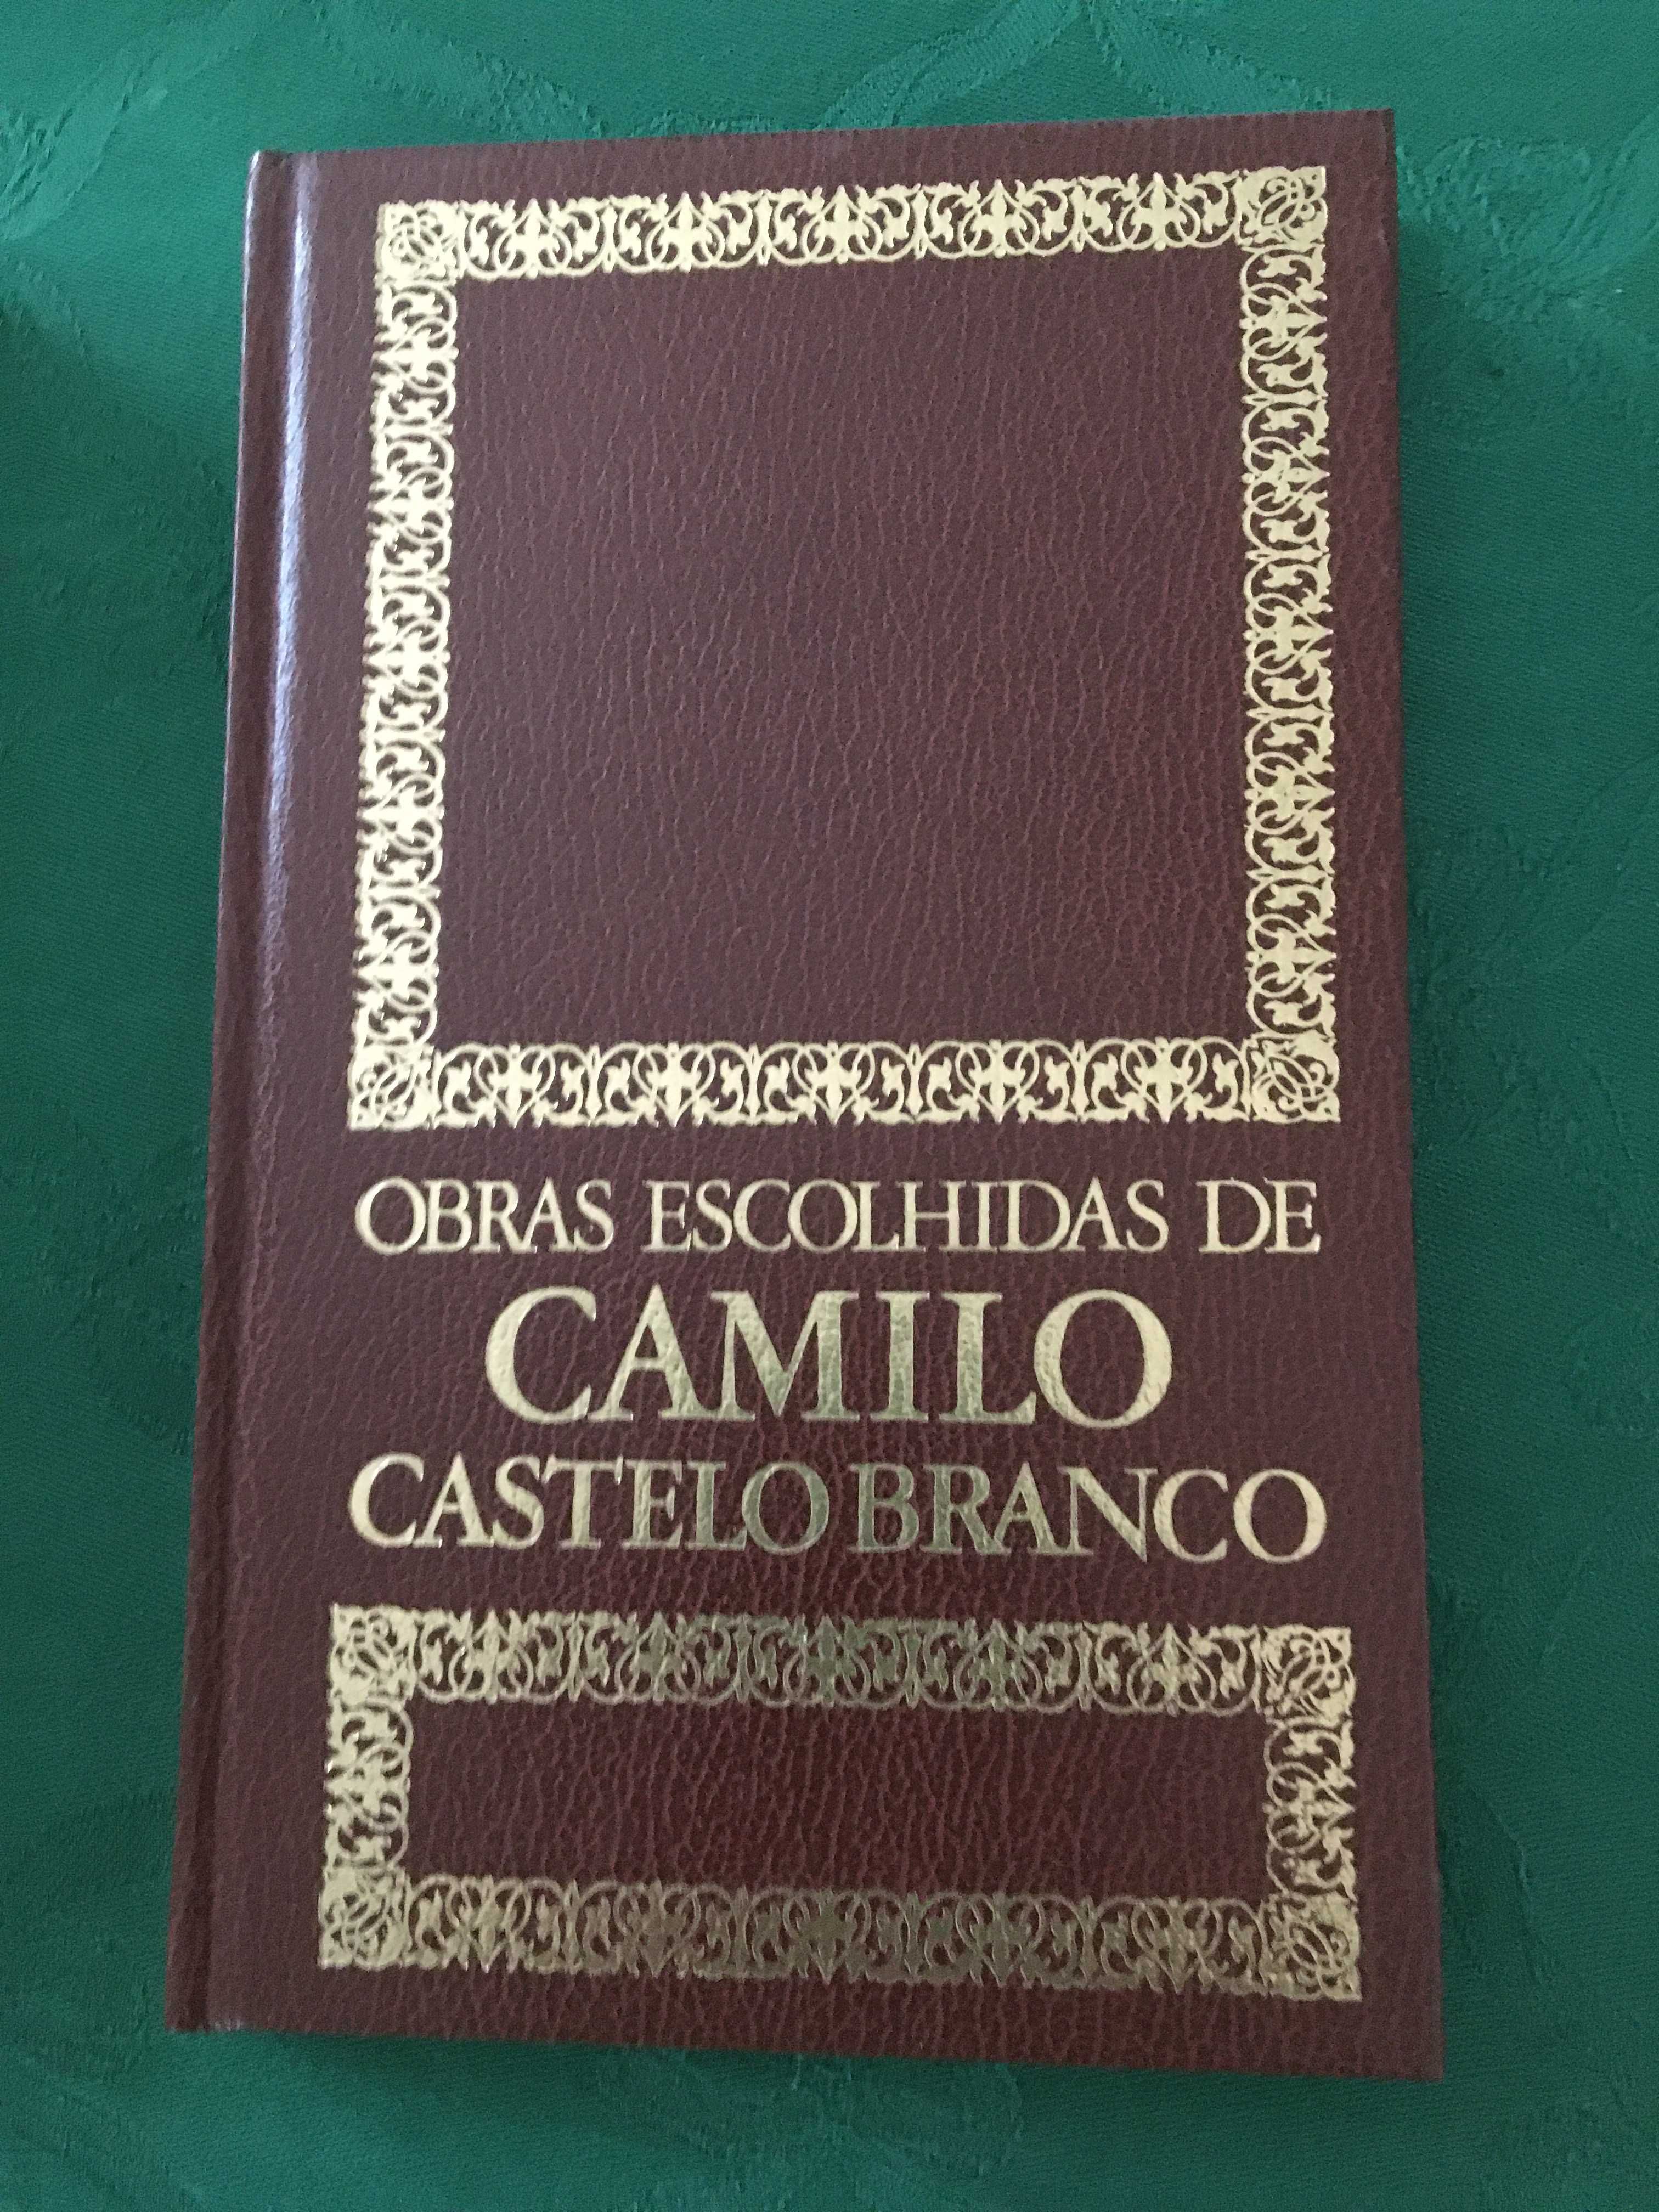 Obras completas de Camilo Castelo Branco - 24 volumes